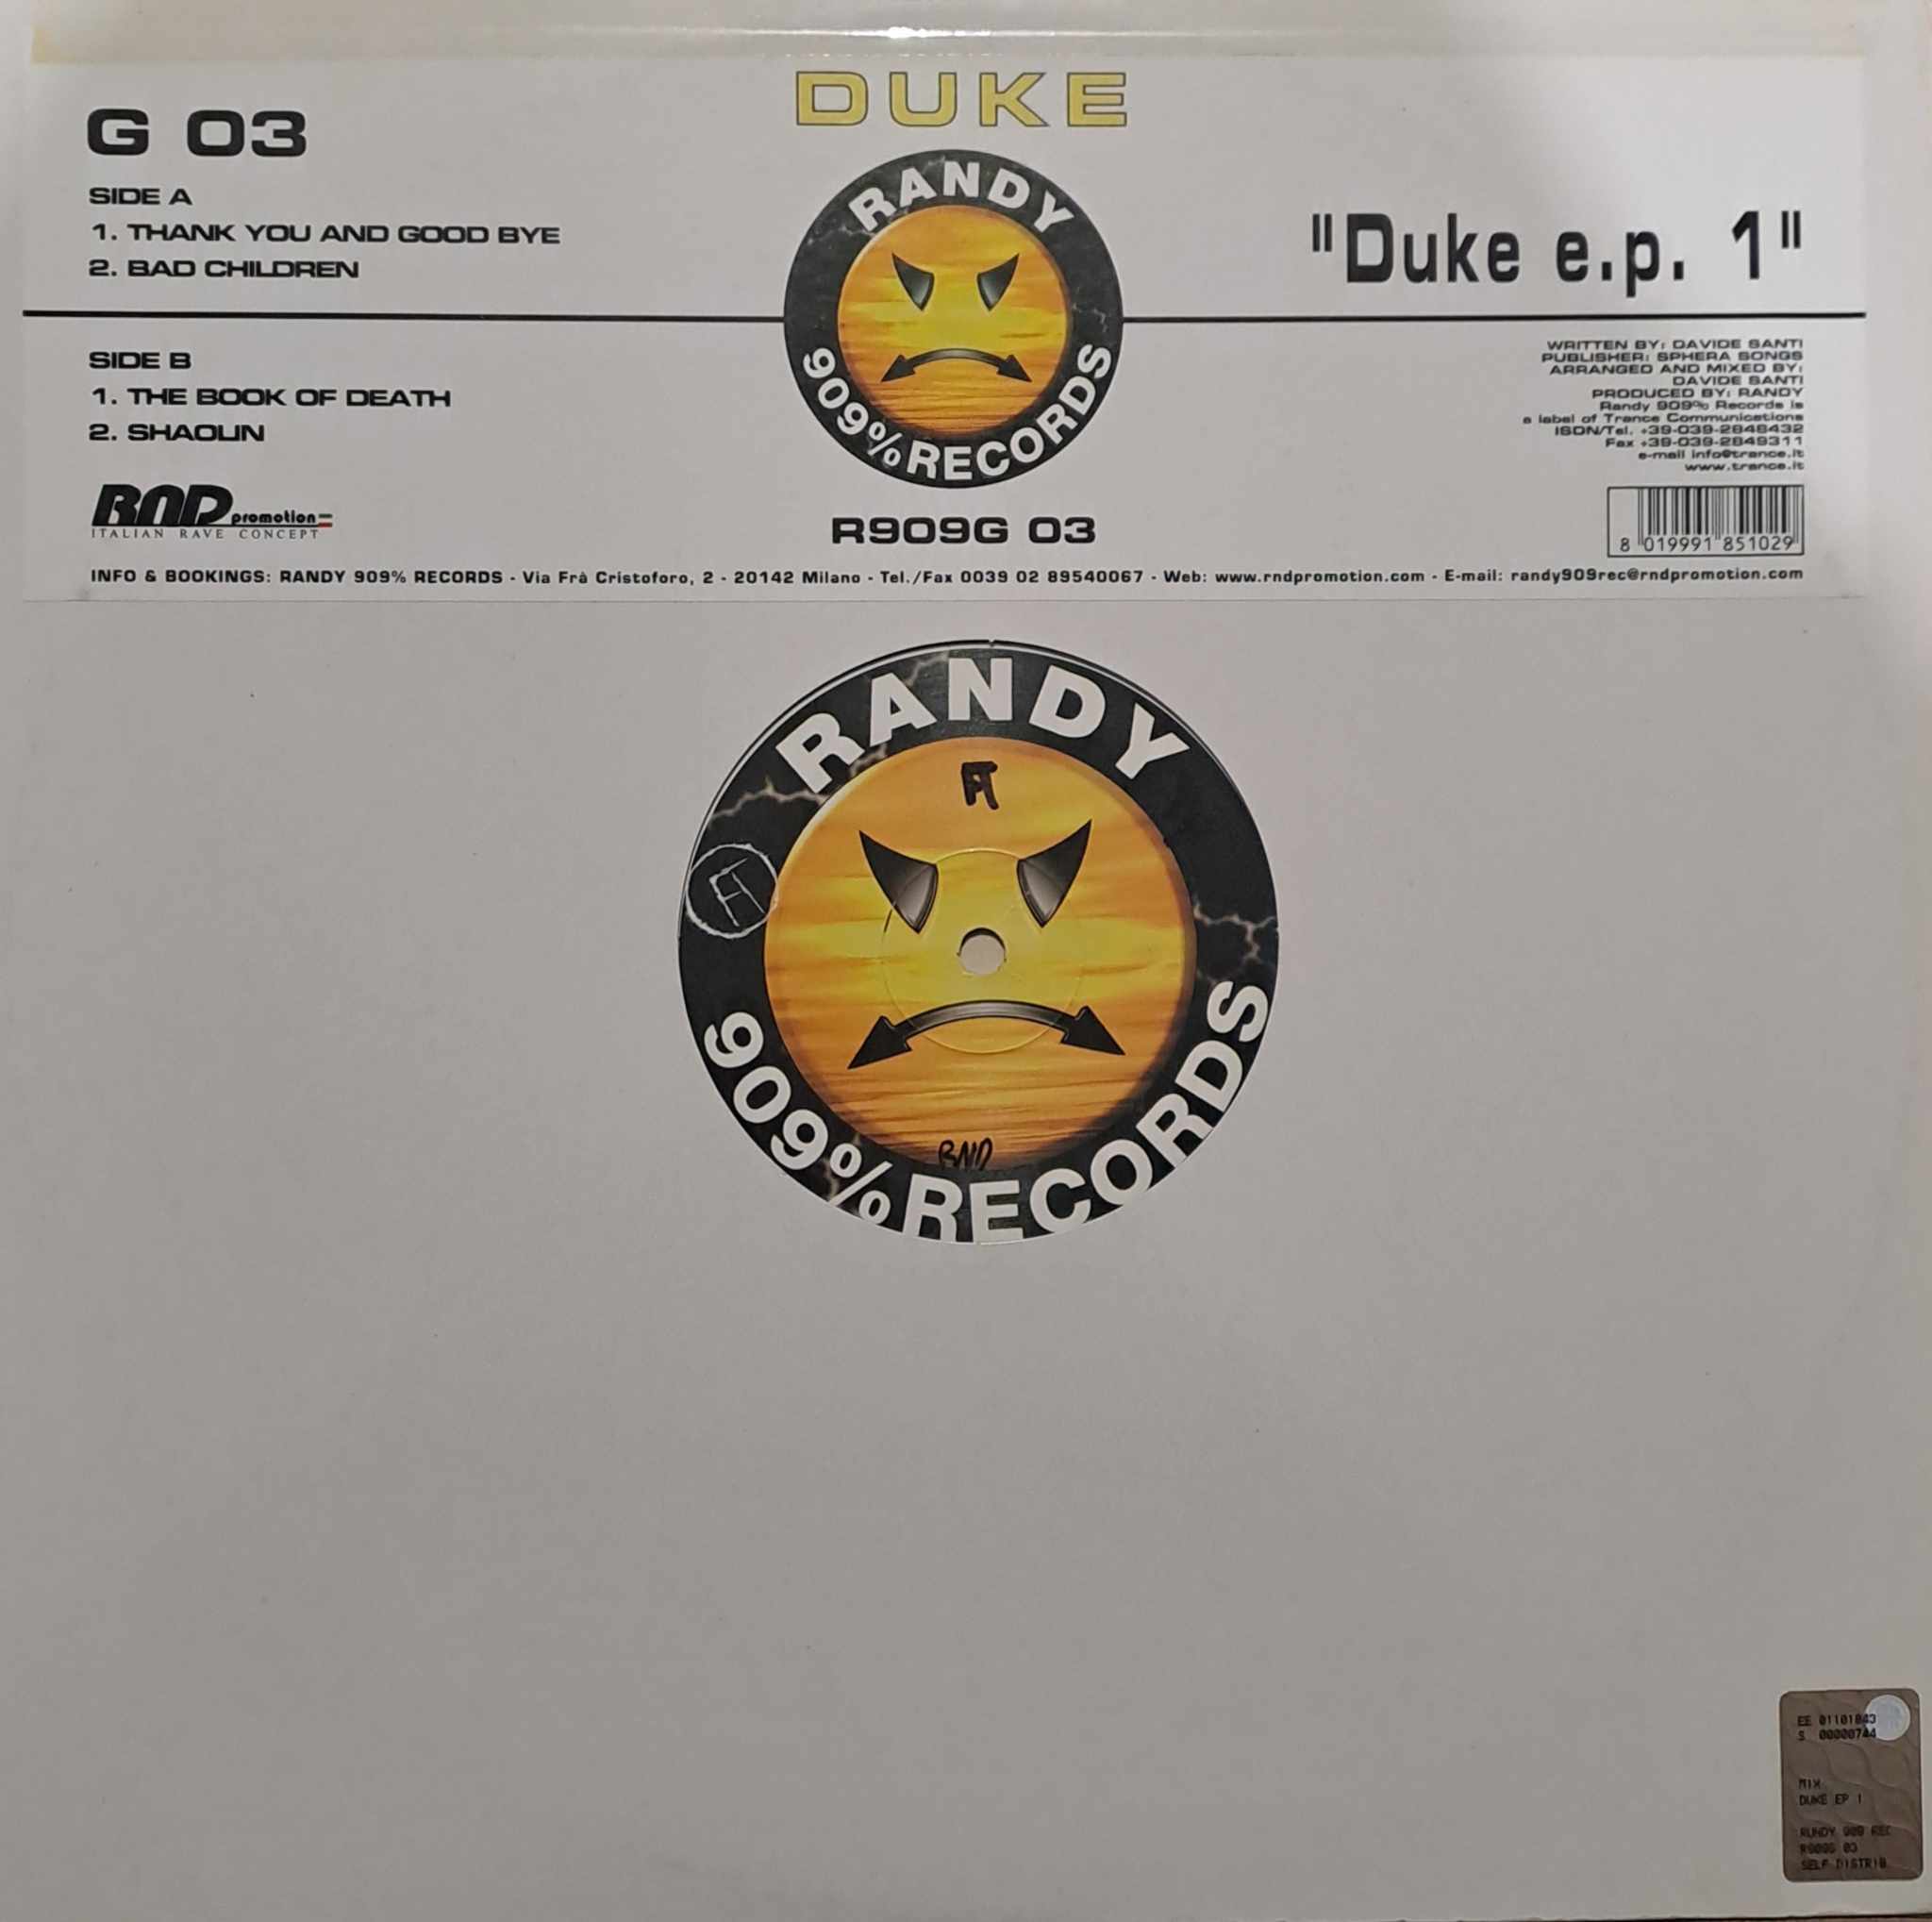 Randy 909 % Records 03 - vinyle hardcore